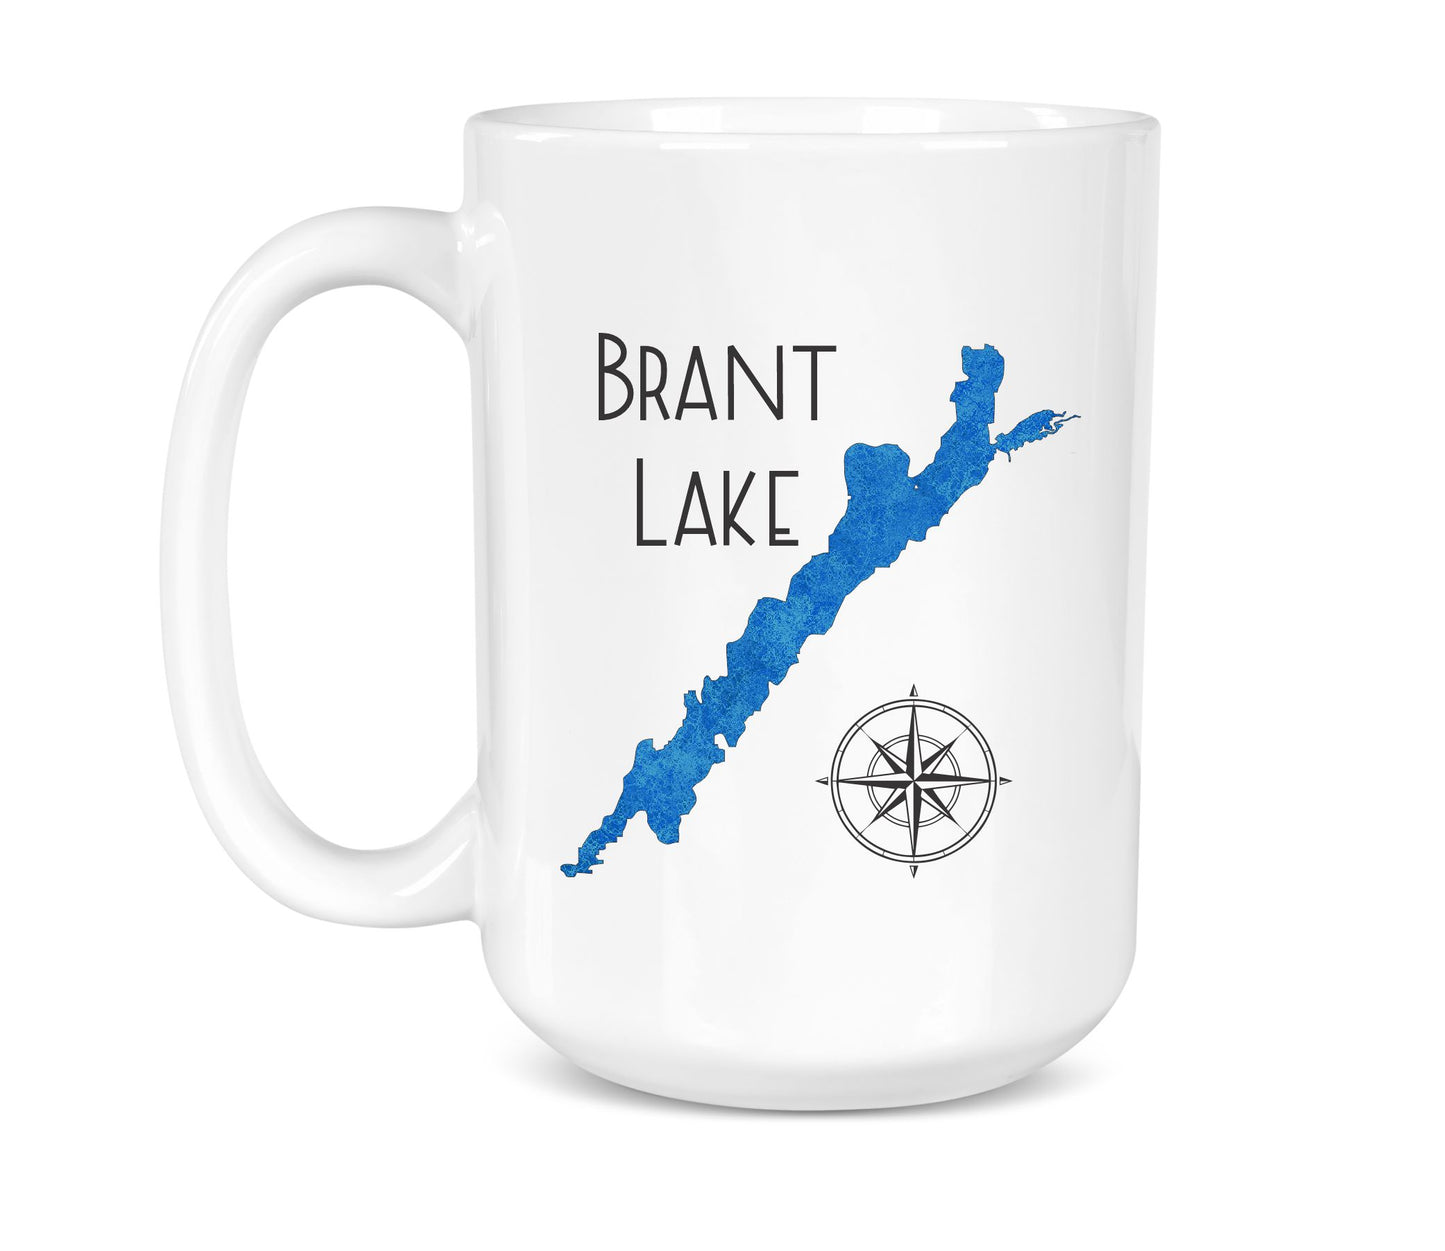 Brant Lake- 15 oz Ceramic Mug